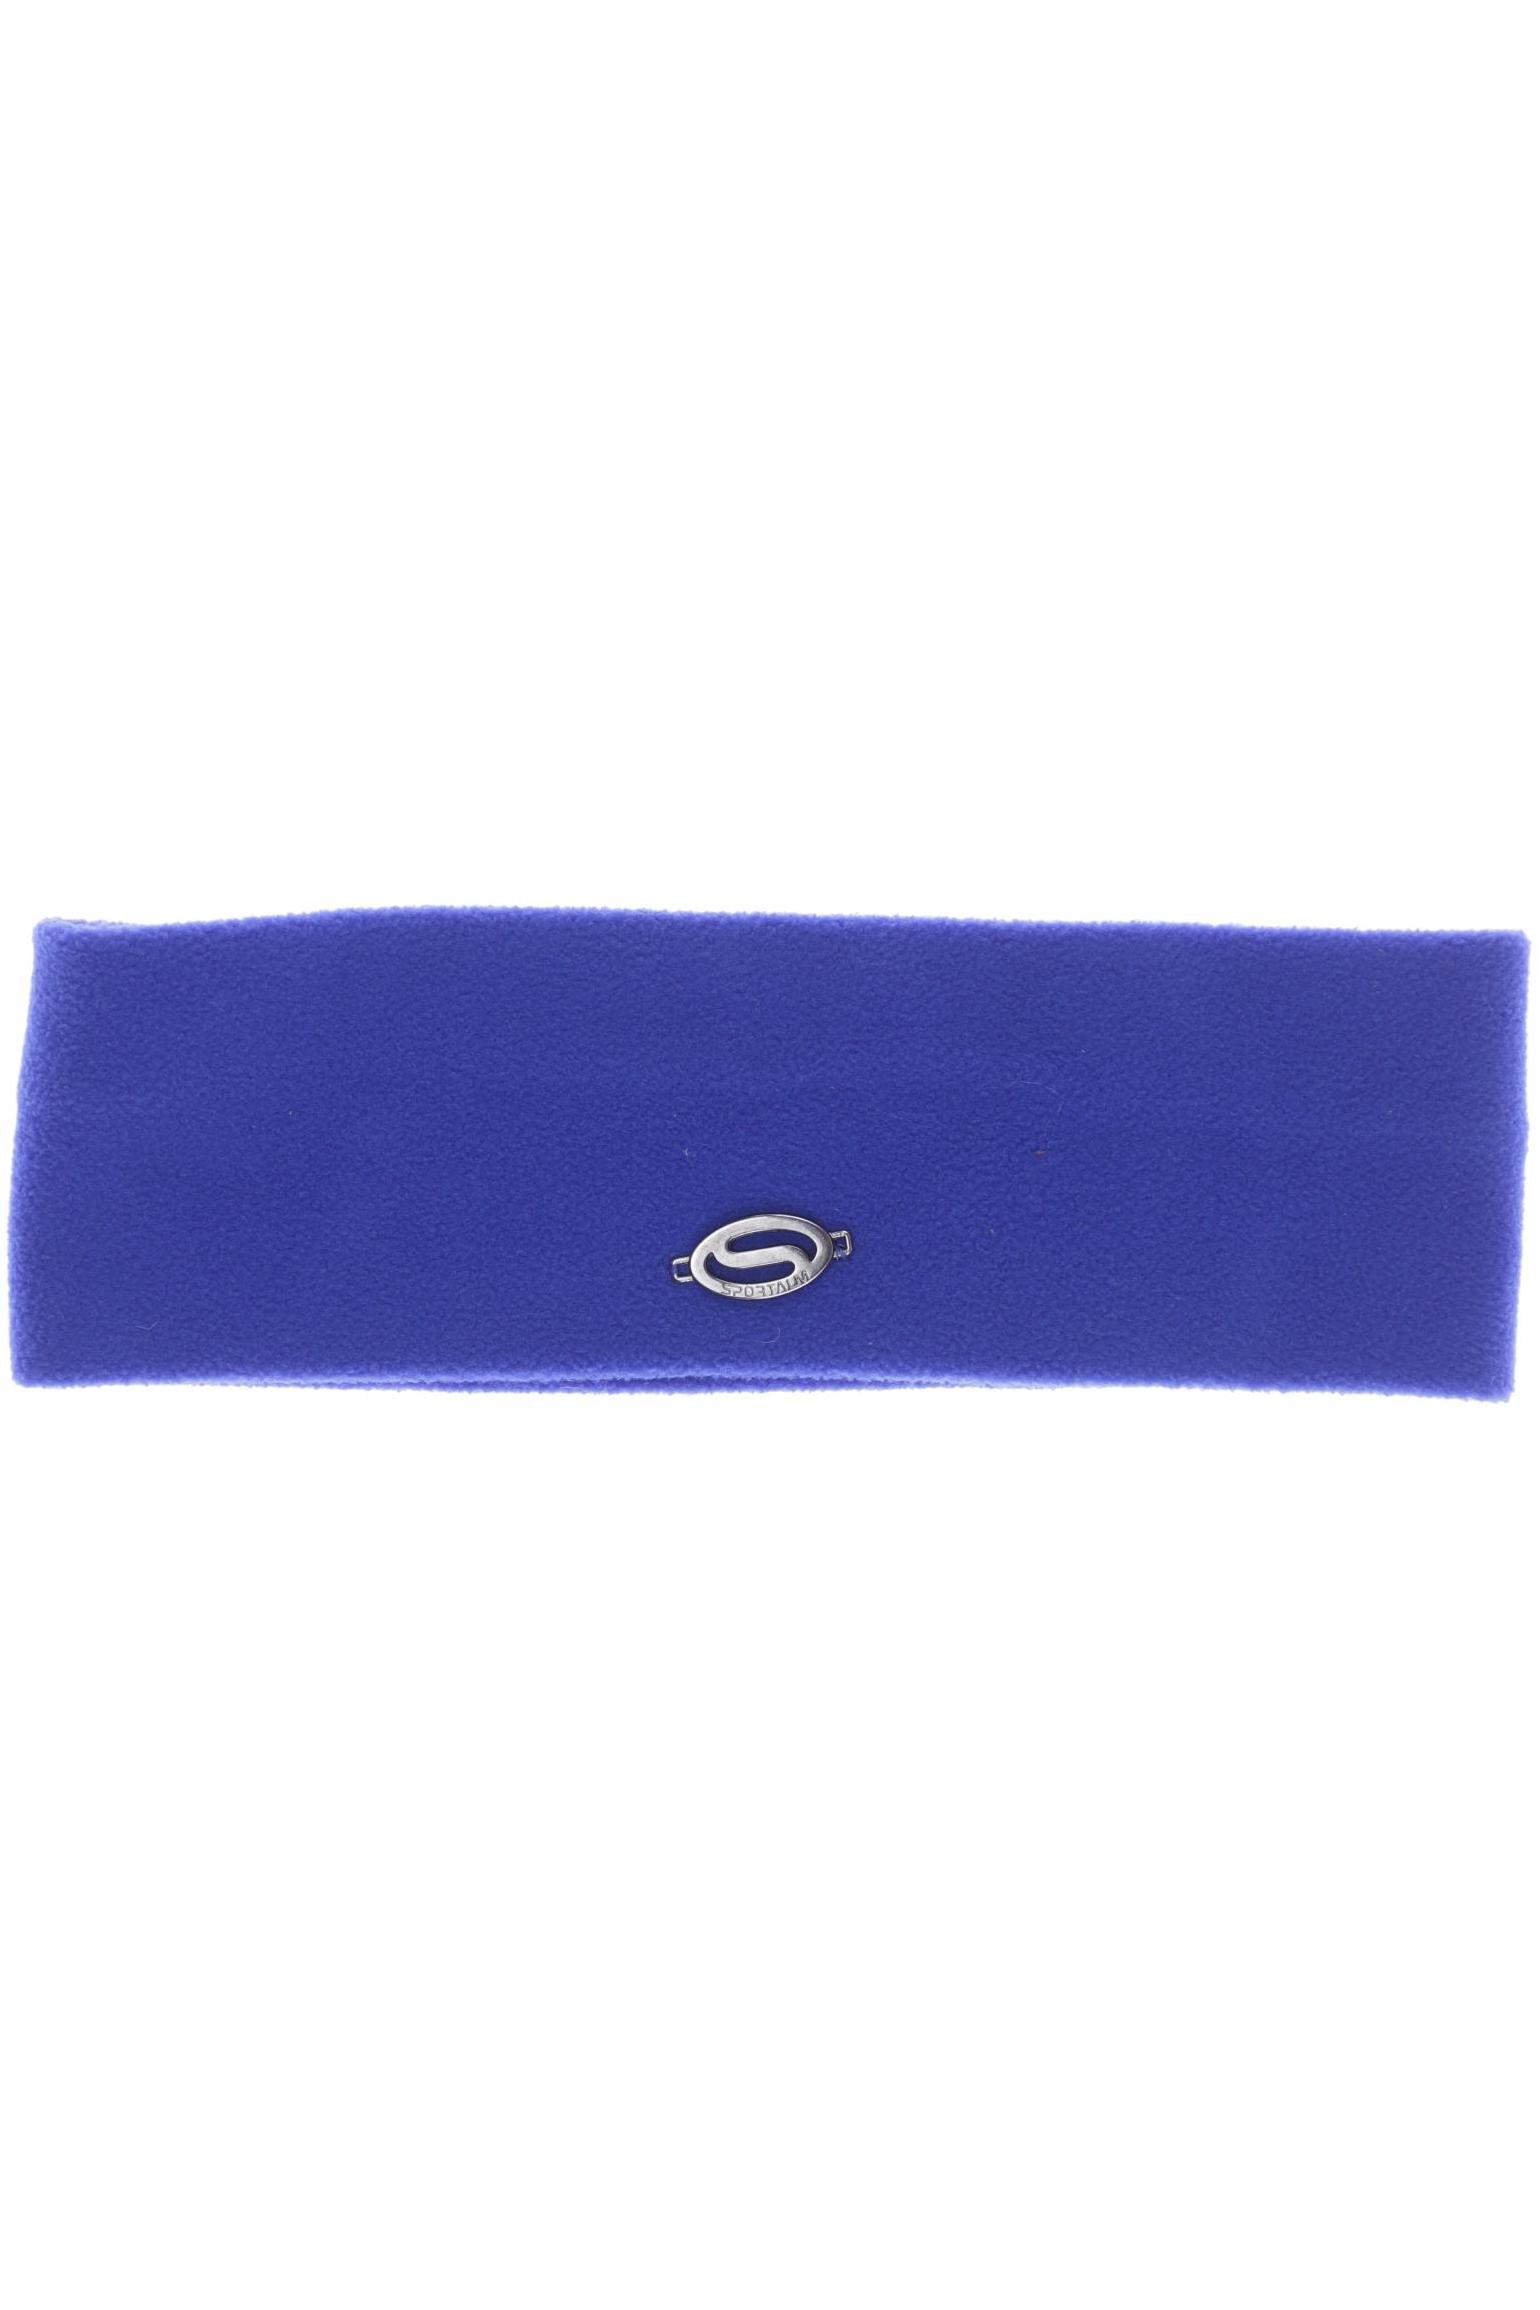 Sportalm Damen Hut/Mütze, blau von Sportalm